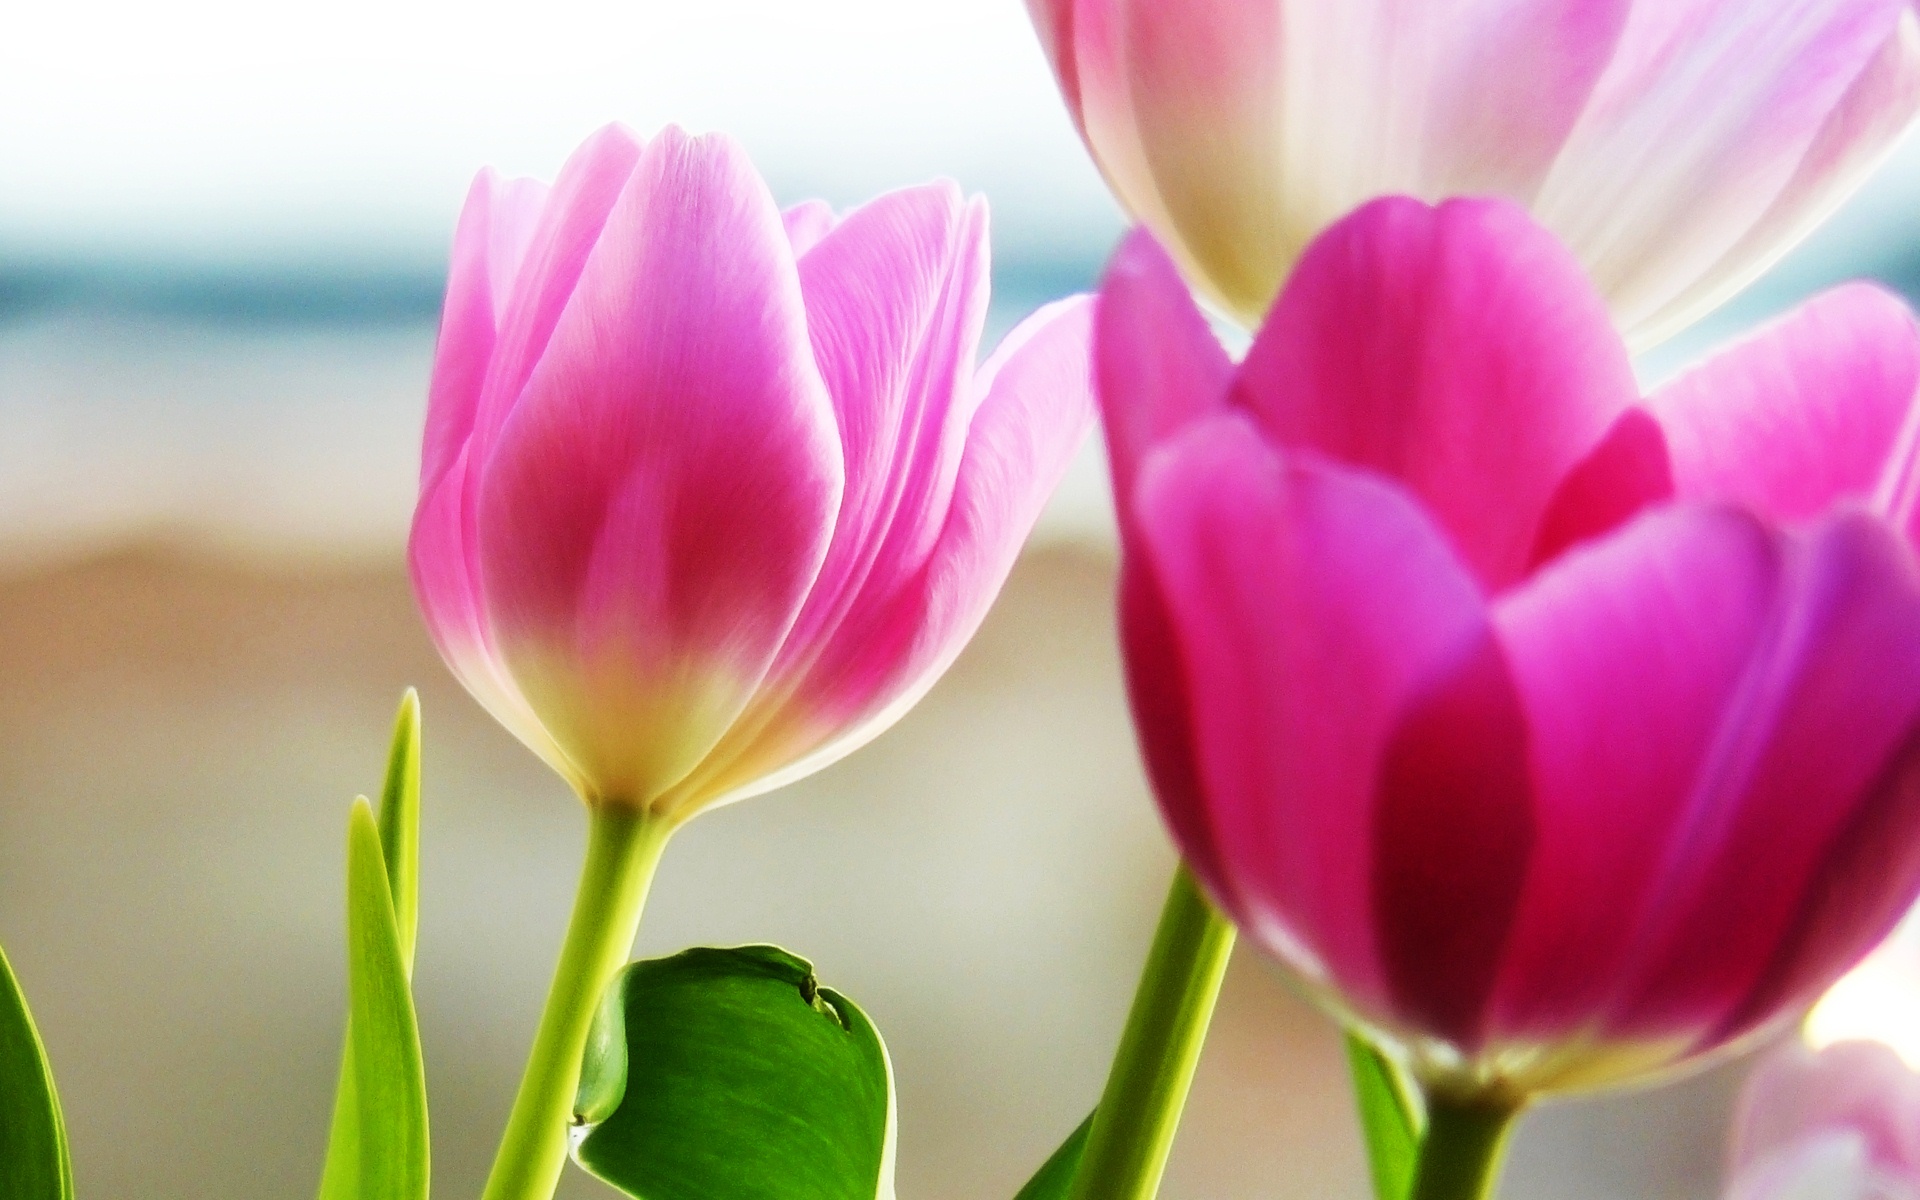 tulips_spring_2-wide.jpg